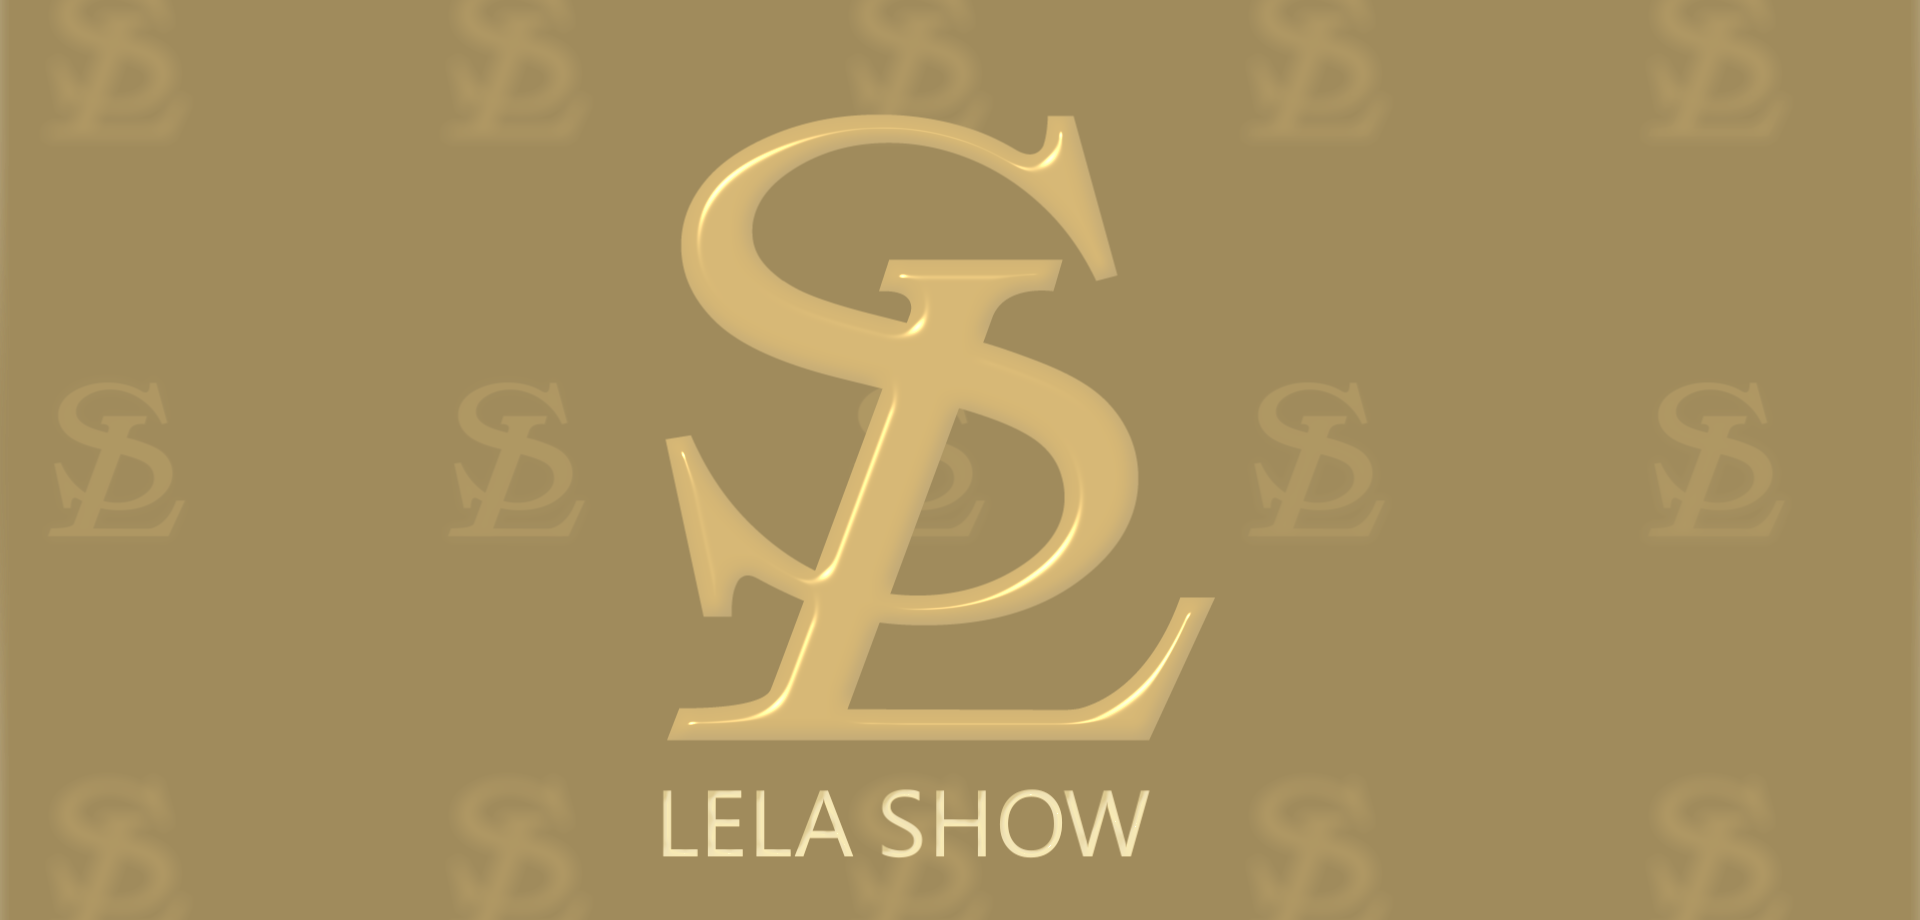 Lela show